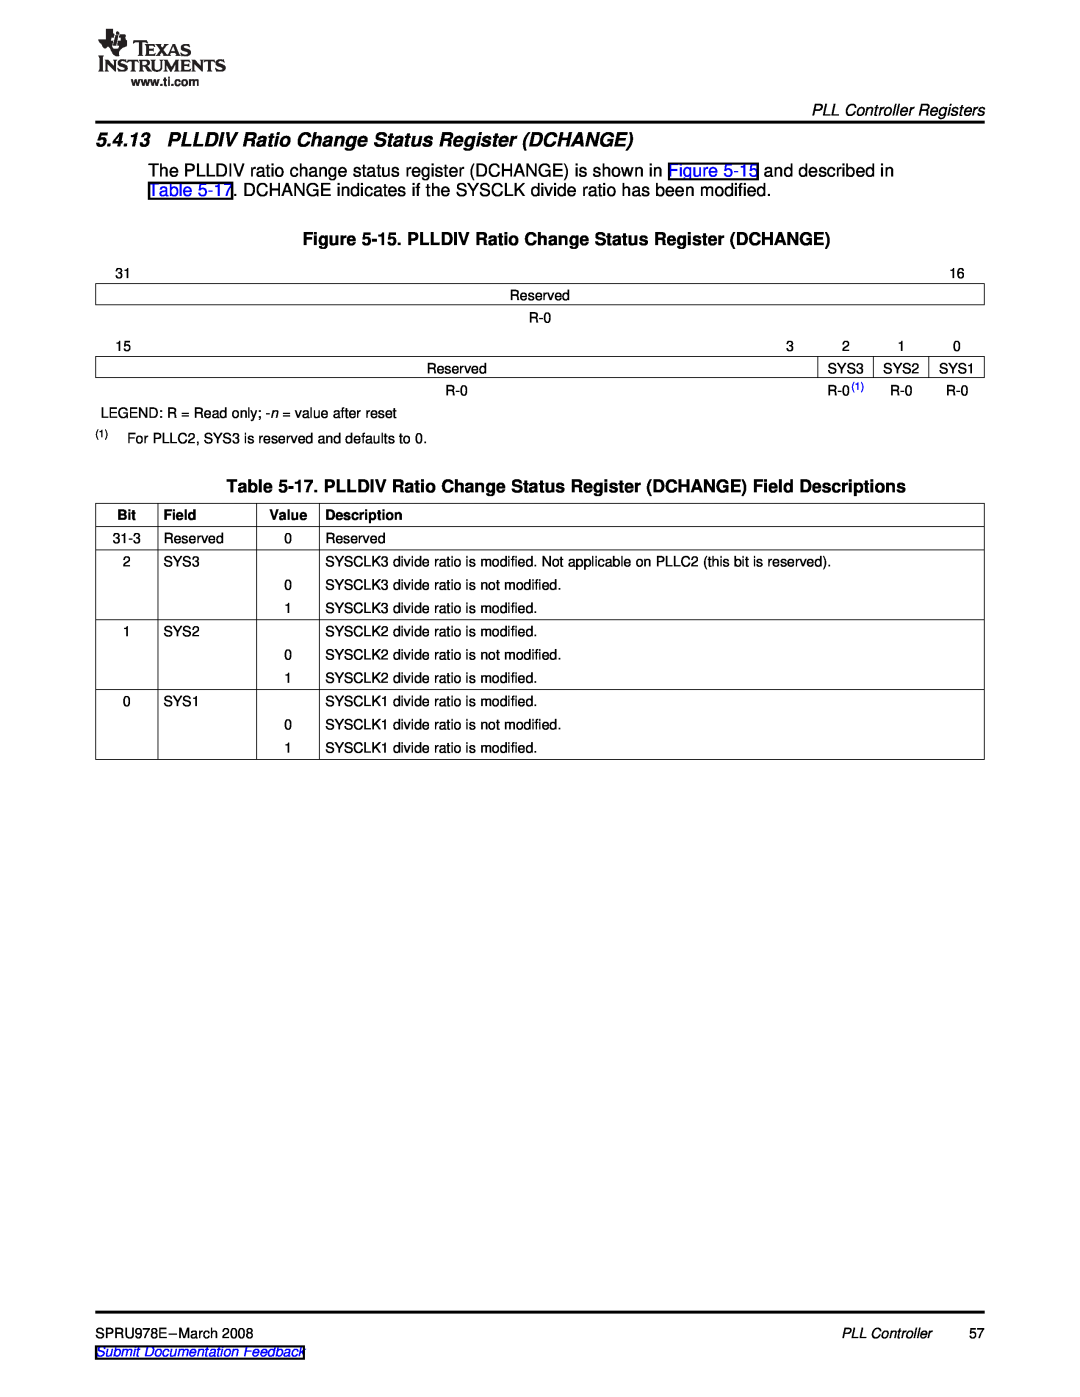 Texas Instruments TMS320DM643x PLLDIV Ratio Change Status Register DCHANGE, PLL Controller Registers, Field, Description 